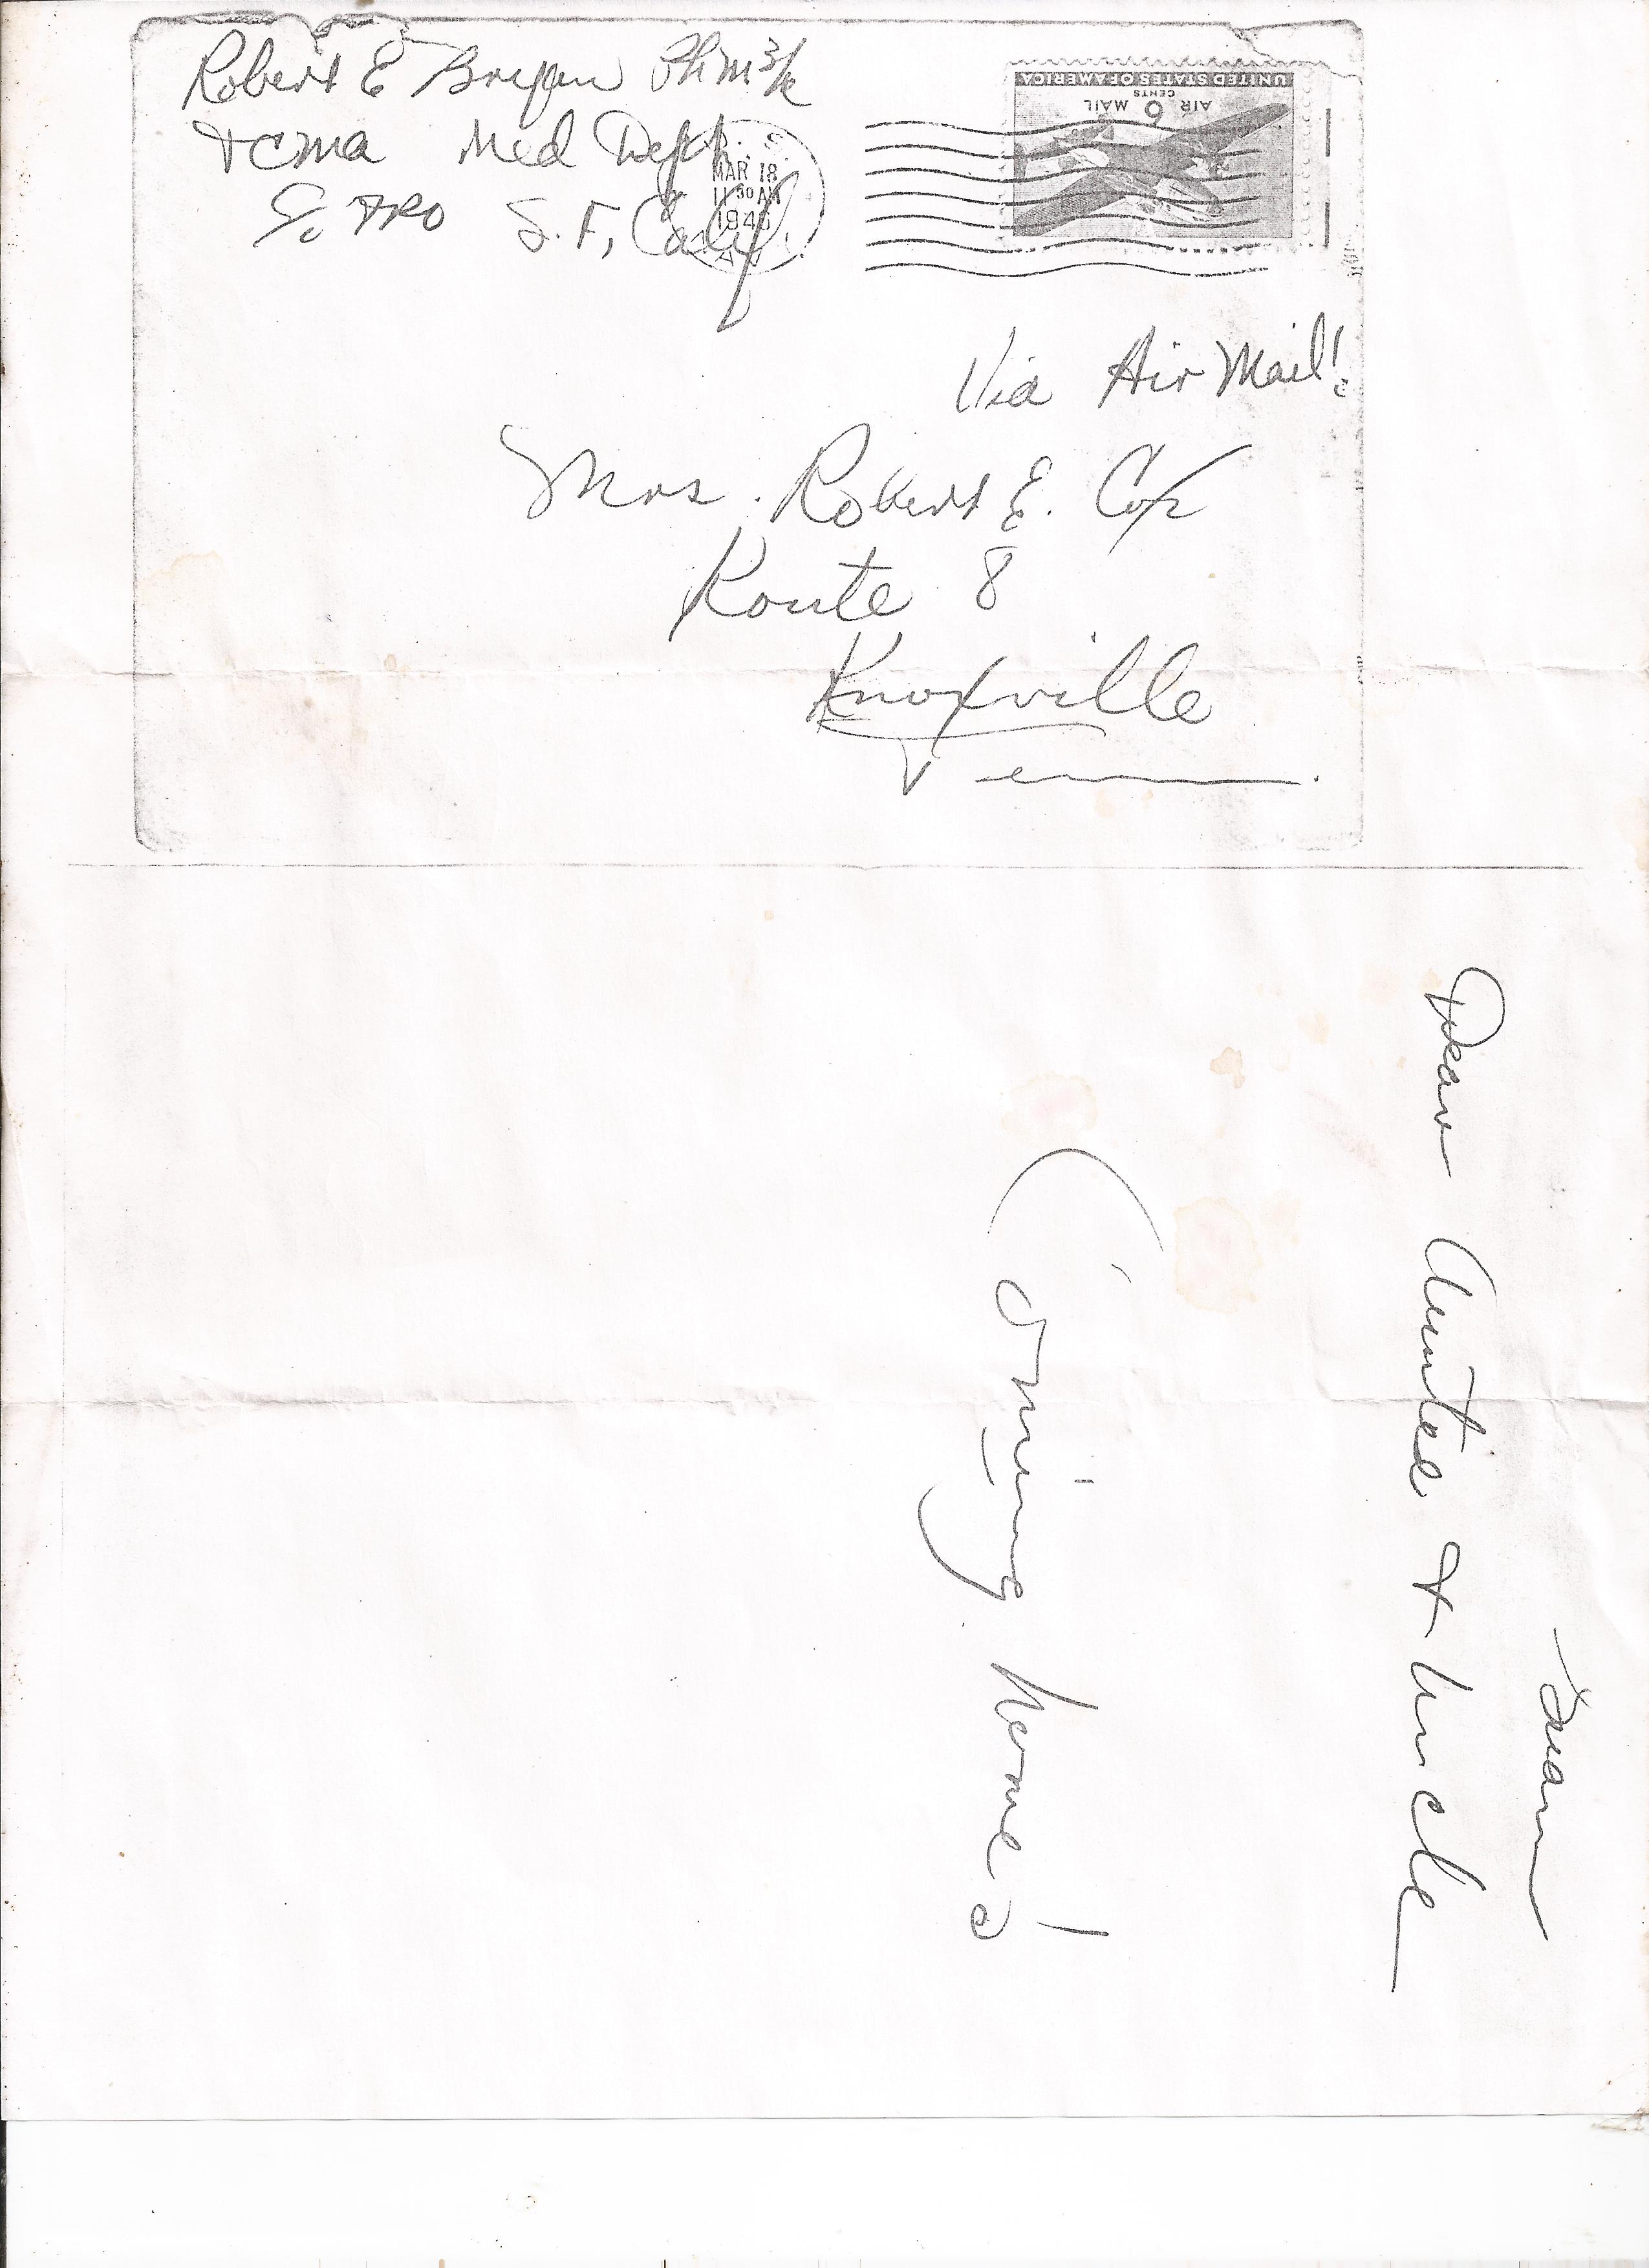 Robert E. Bryan letter, March 1946